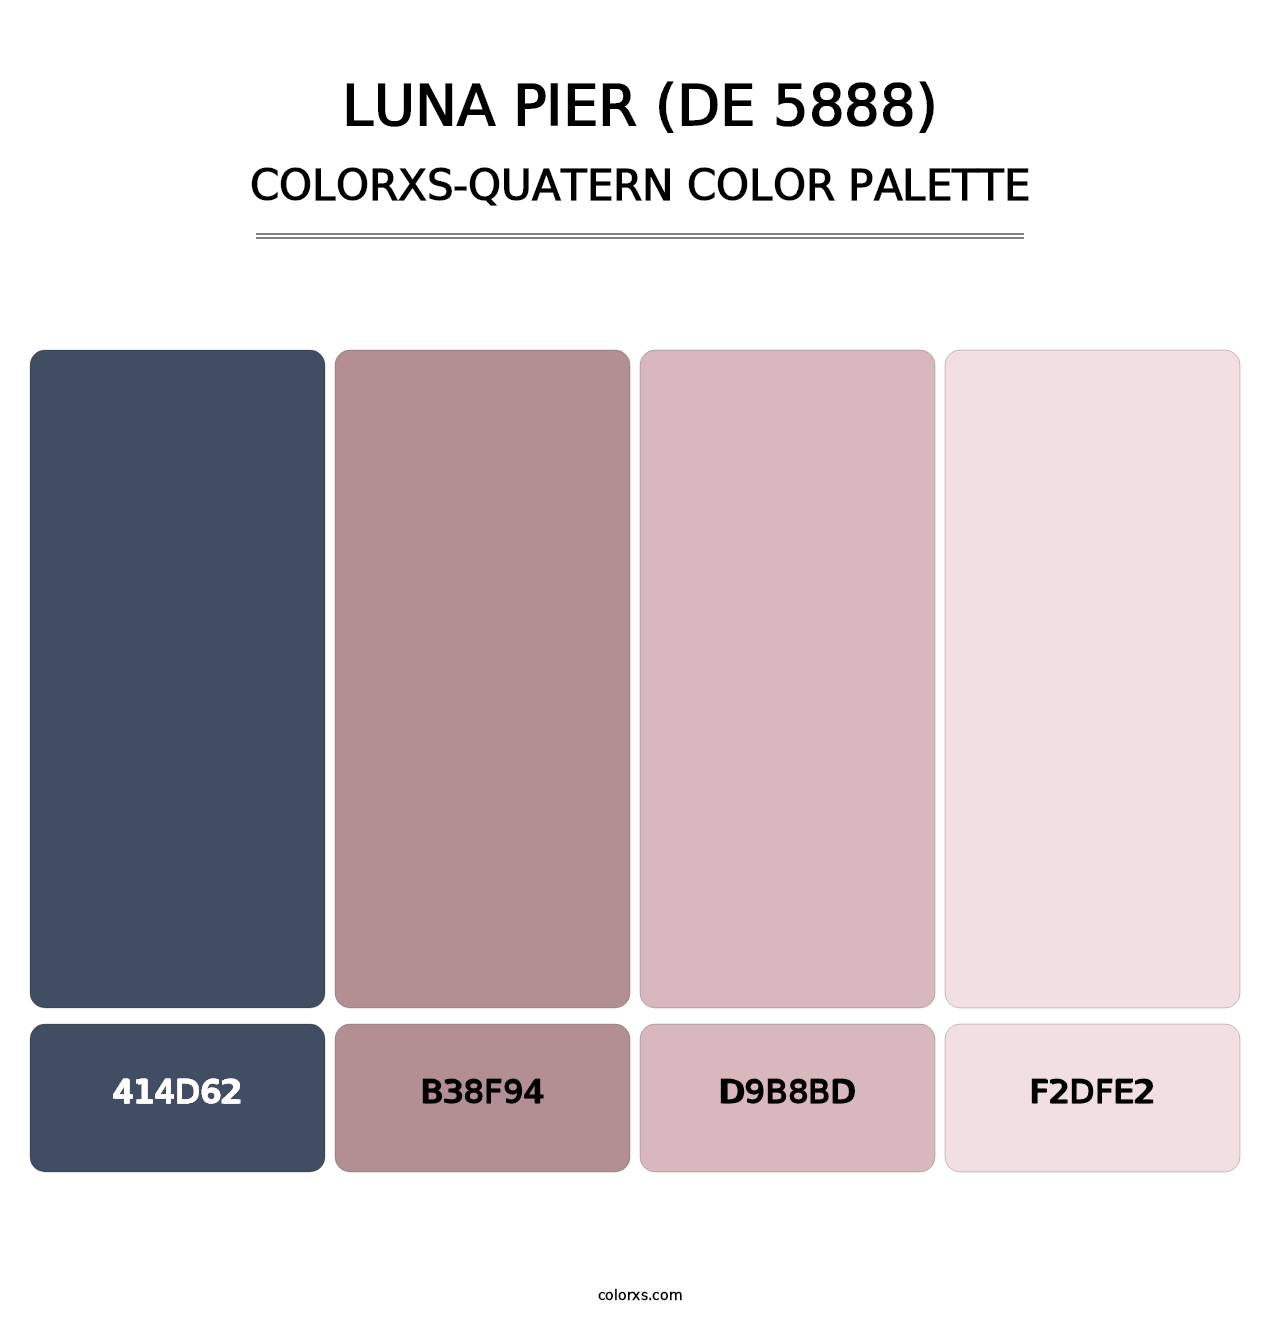 Luna Pier (DE 5888) - Colorxs Quatern Palette